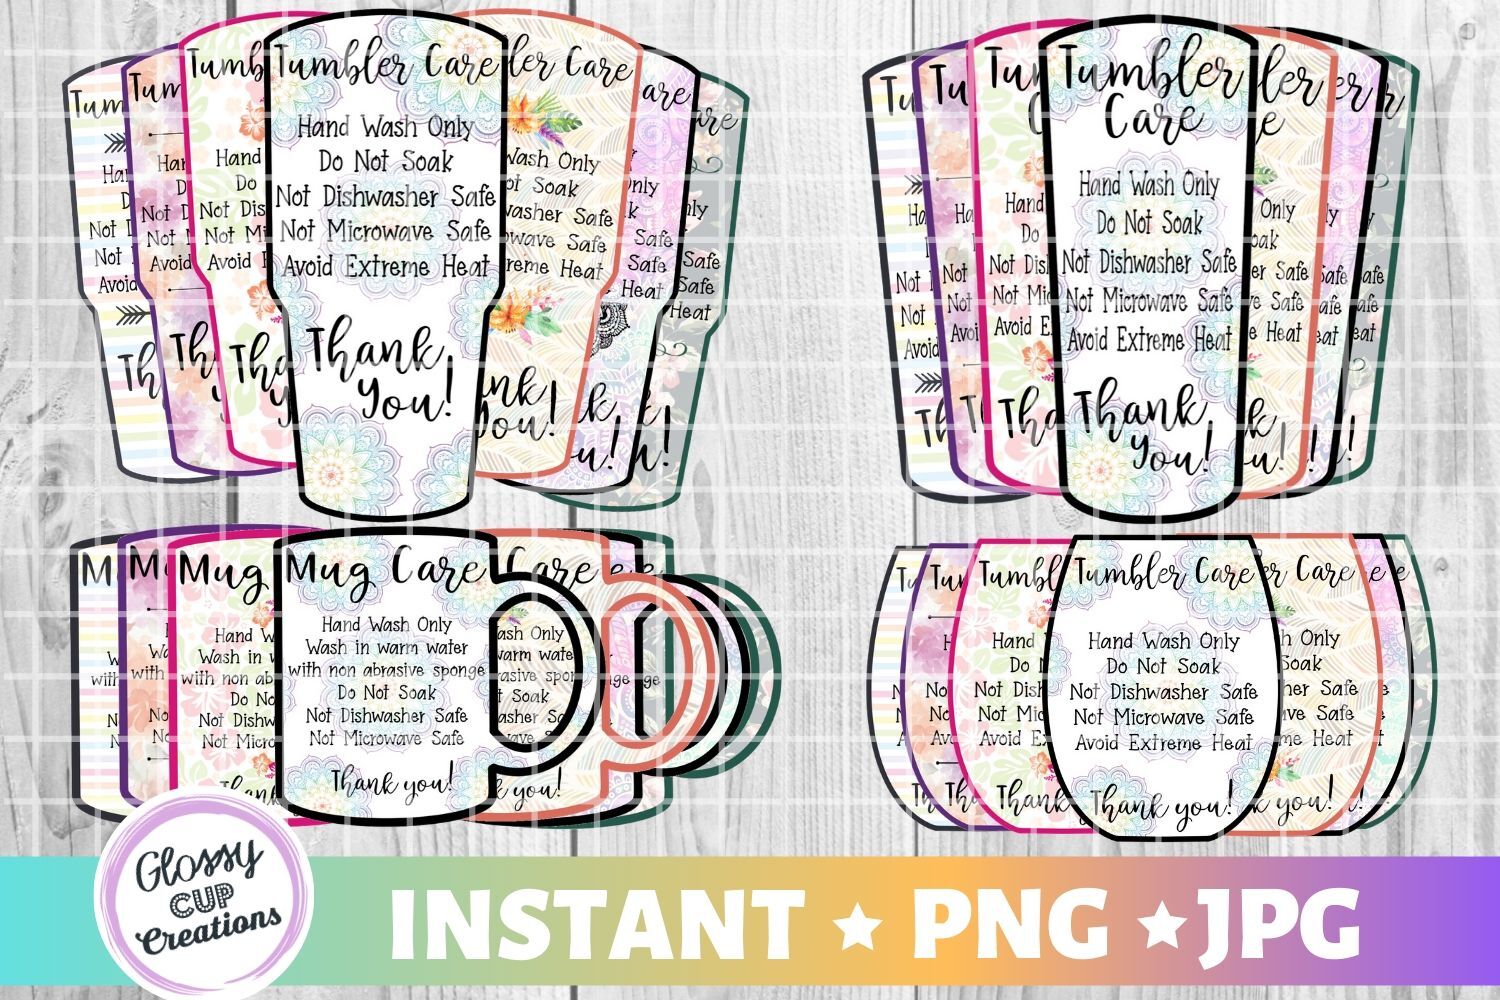 Download Mega Tumbler Care Card Pack, PNG, Print and Cut, 7 Designs ...